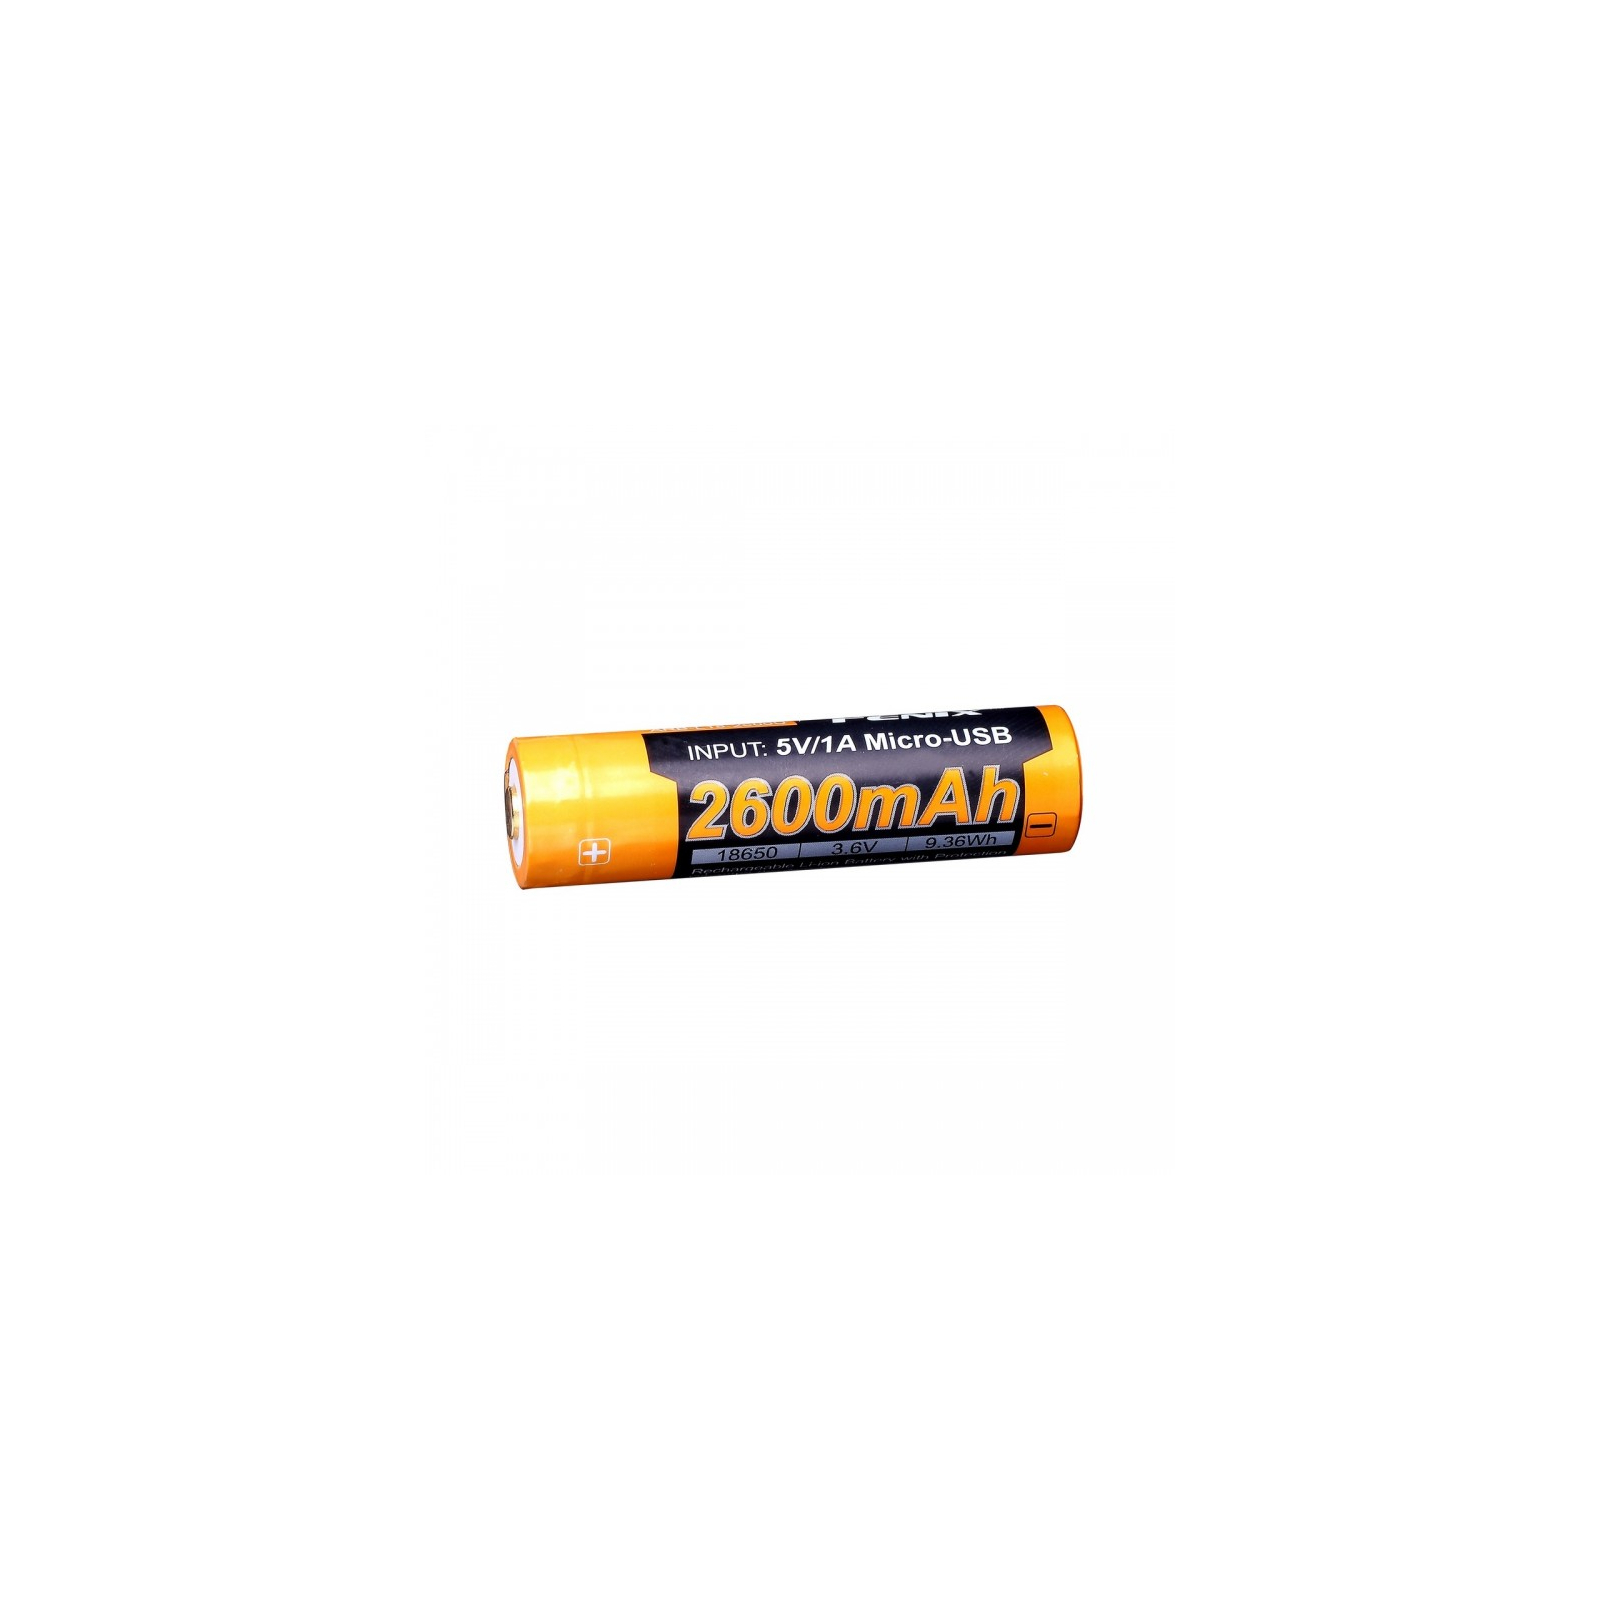 Акумулятор Fenix 18650  2600 mAh micro usb зарядка (ARB-L18-2600U) зображення 2